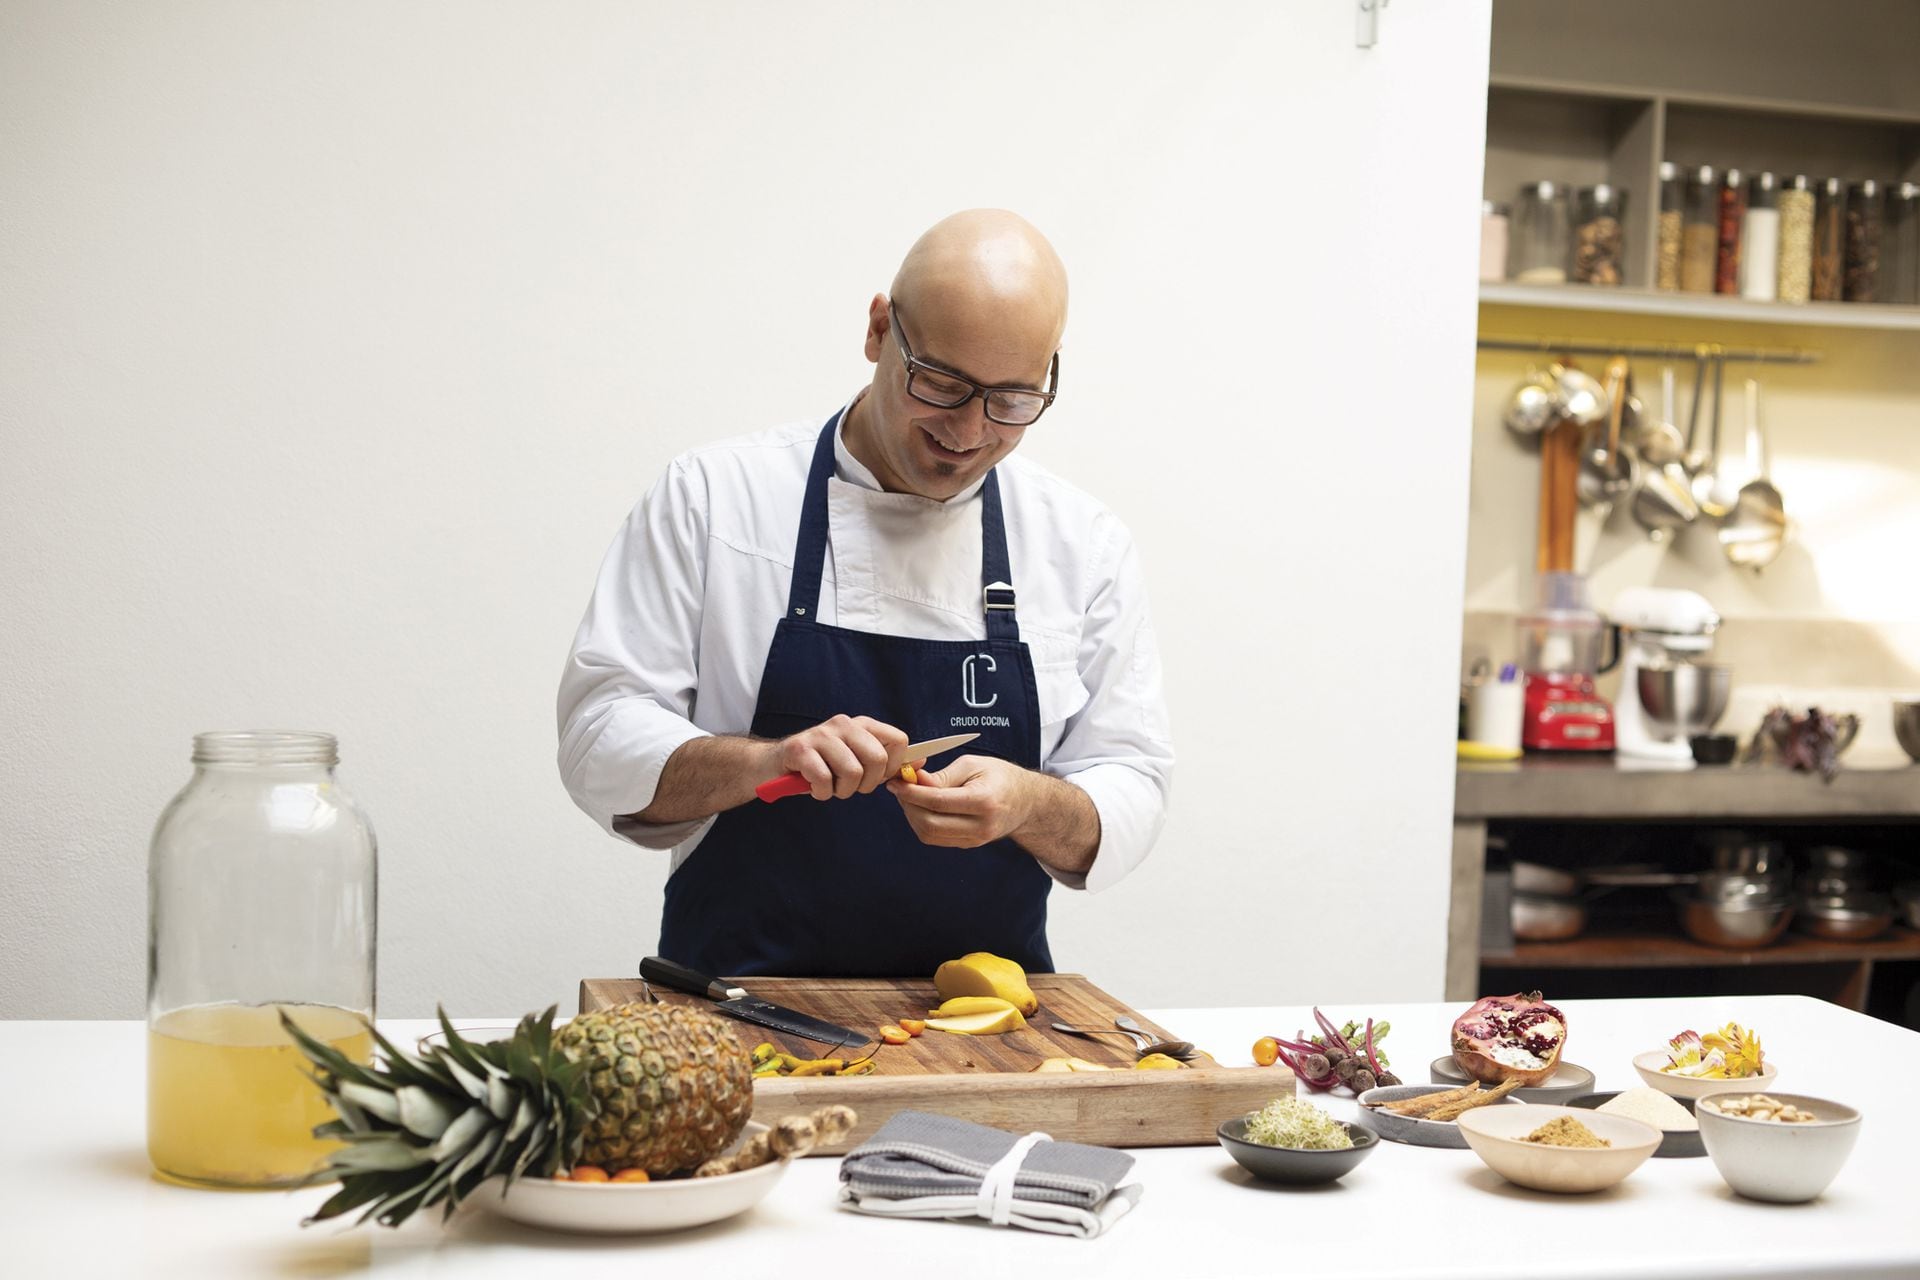 Maximo Cabrera, chef creador del estudio Crudo Cocina, donde enseña a cocinar sin proteína animal